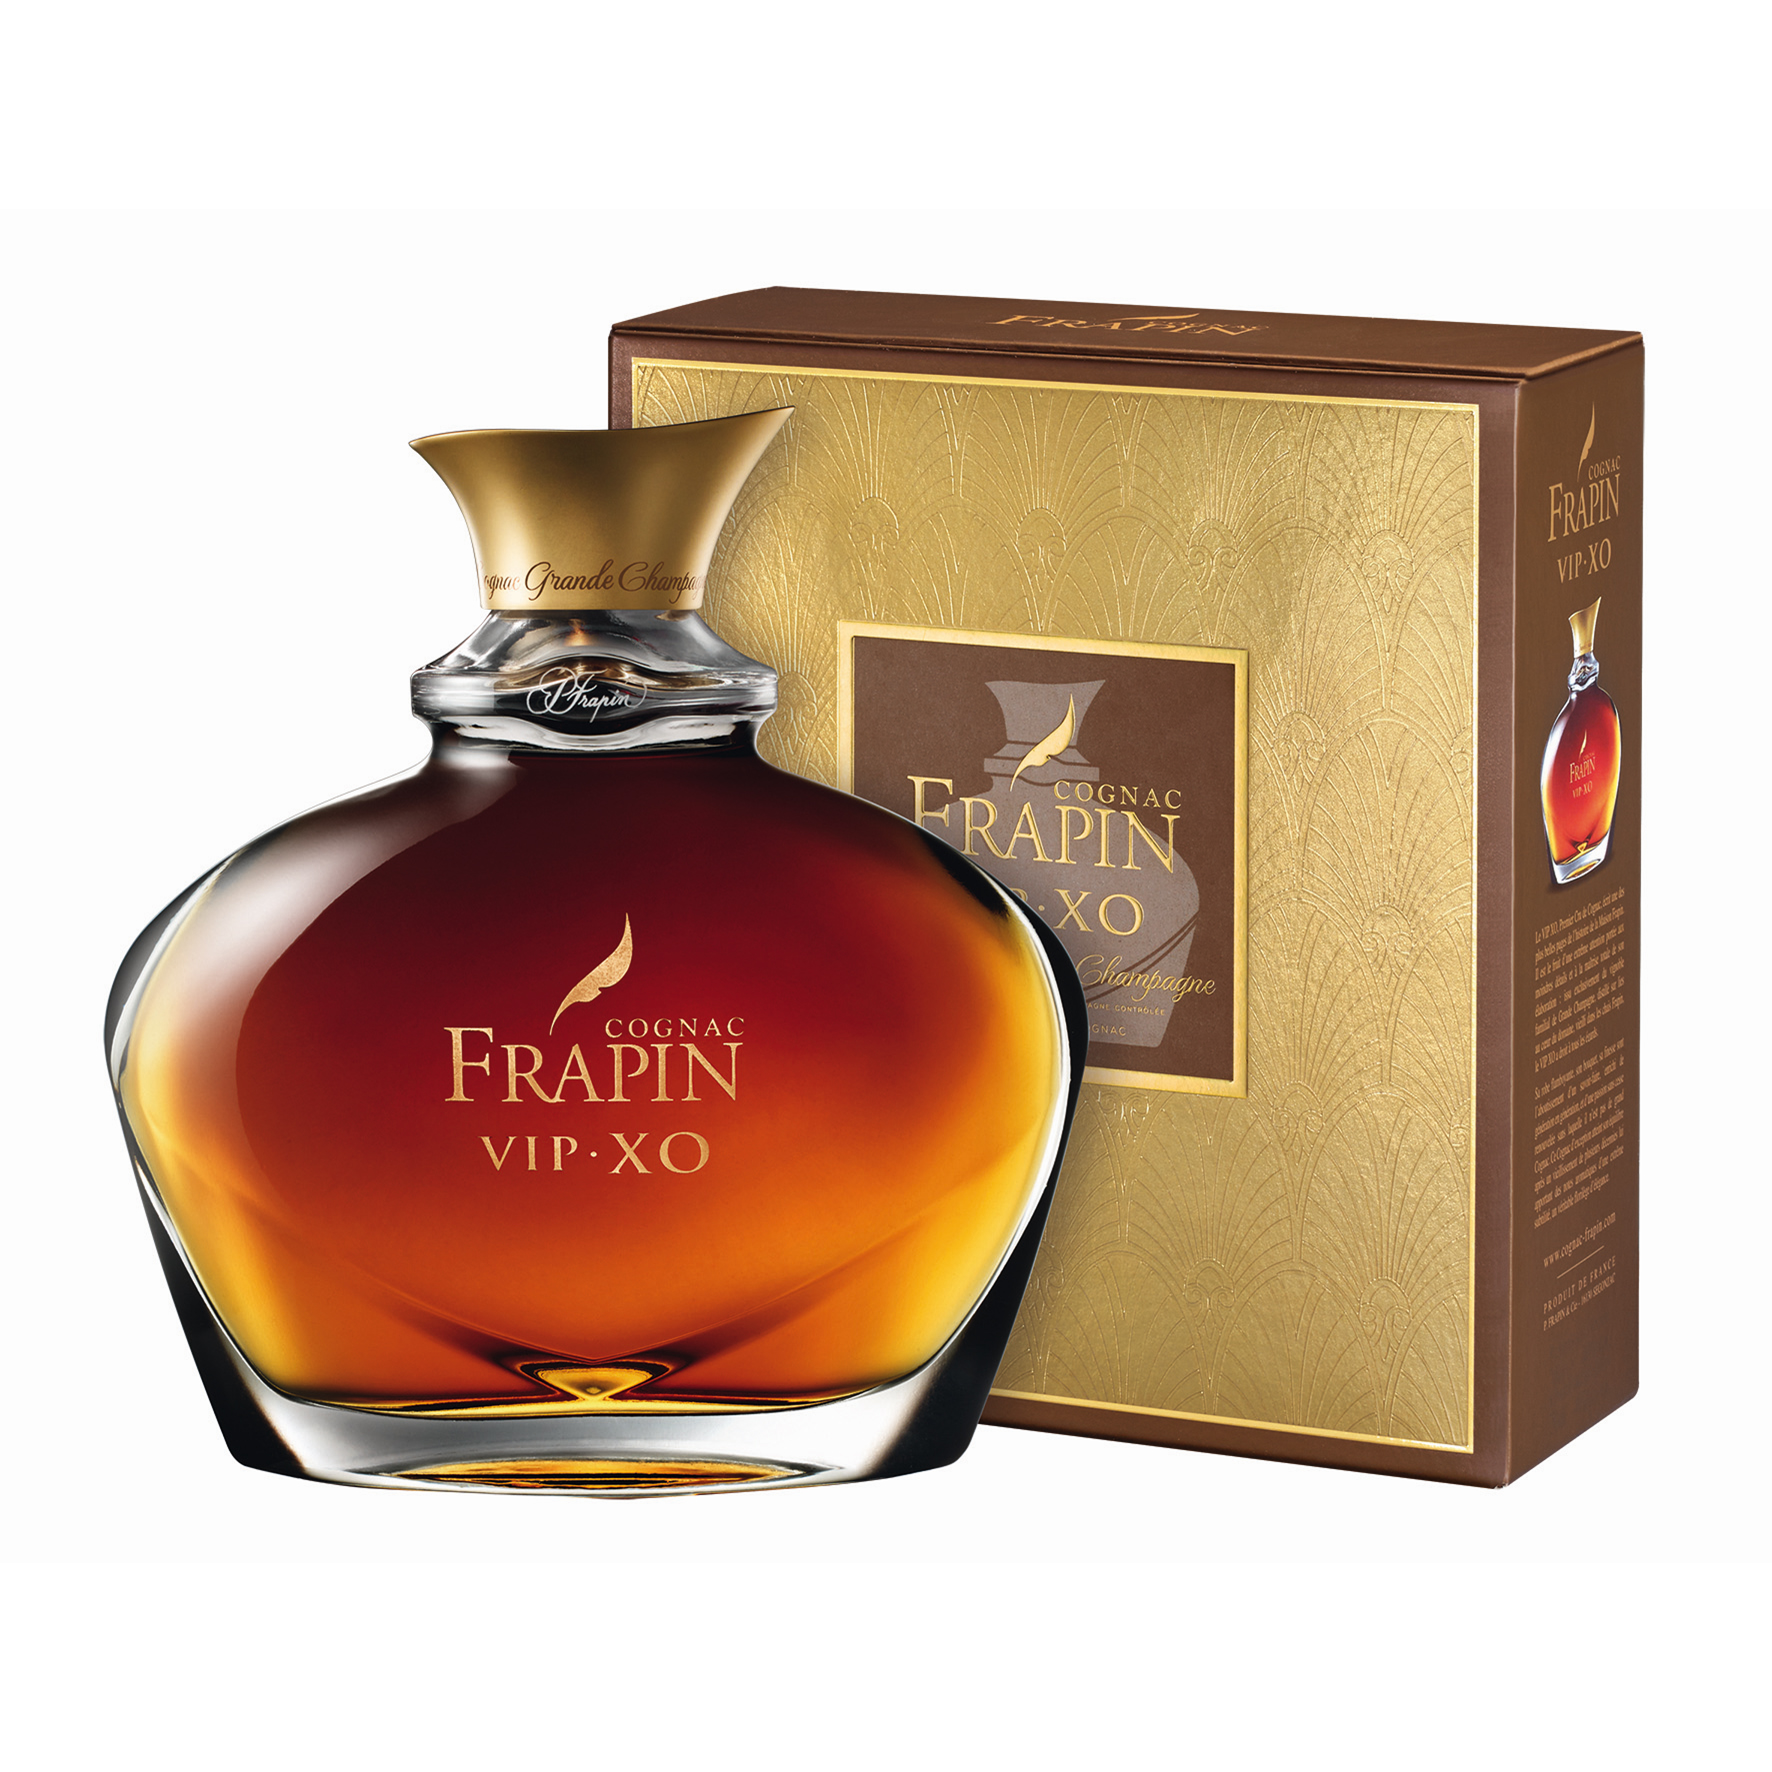 FRAPIN V.I.P. XO Cognac 40% vol., 0,7l